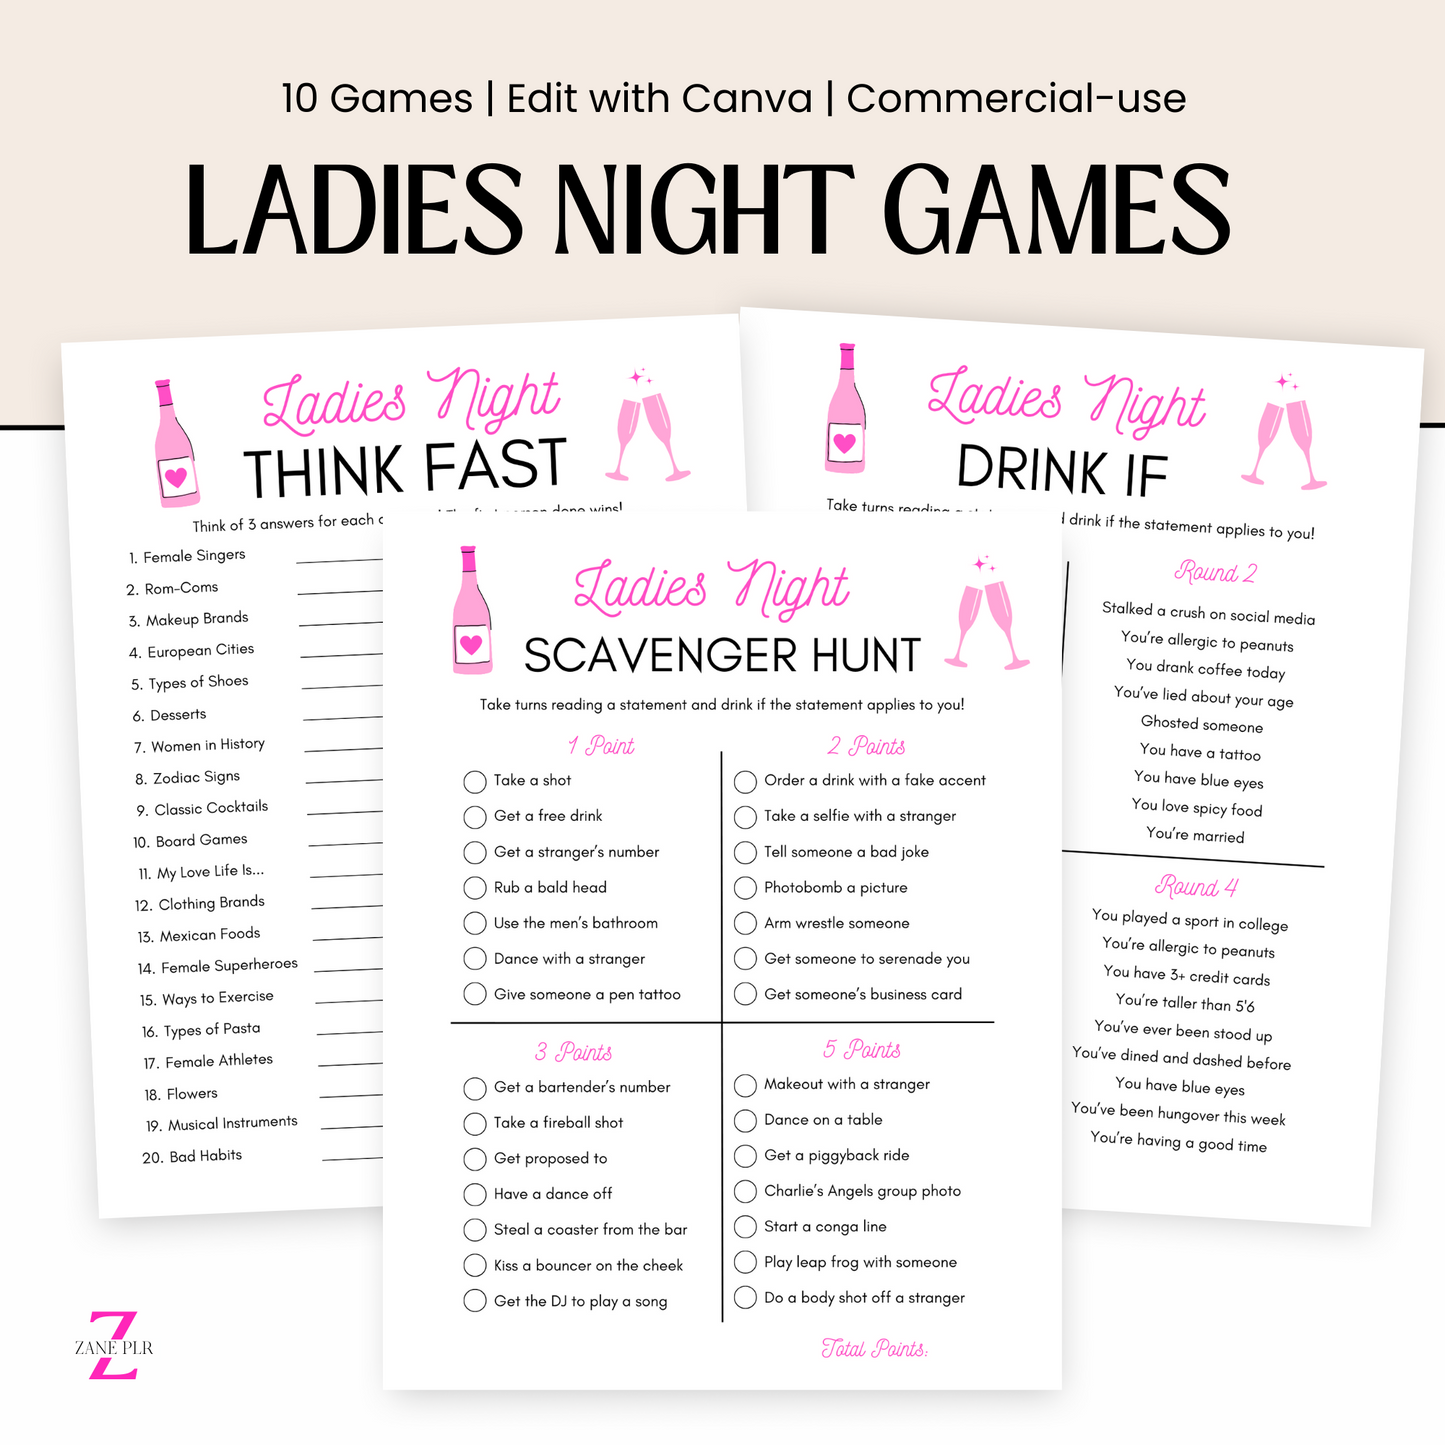 plr ladies night games